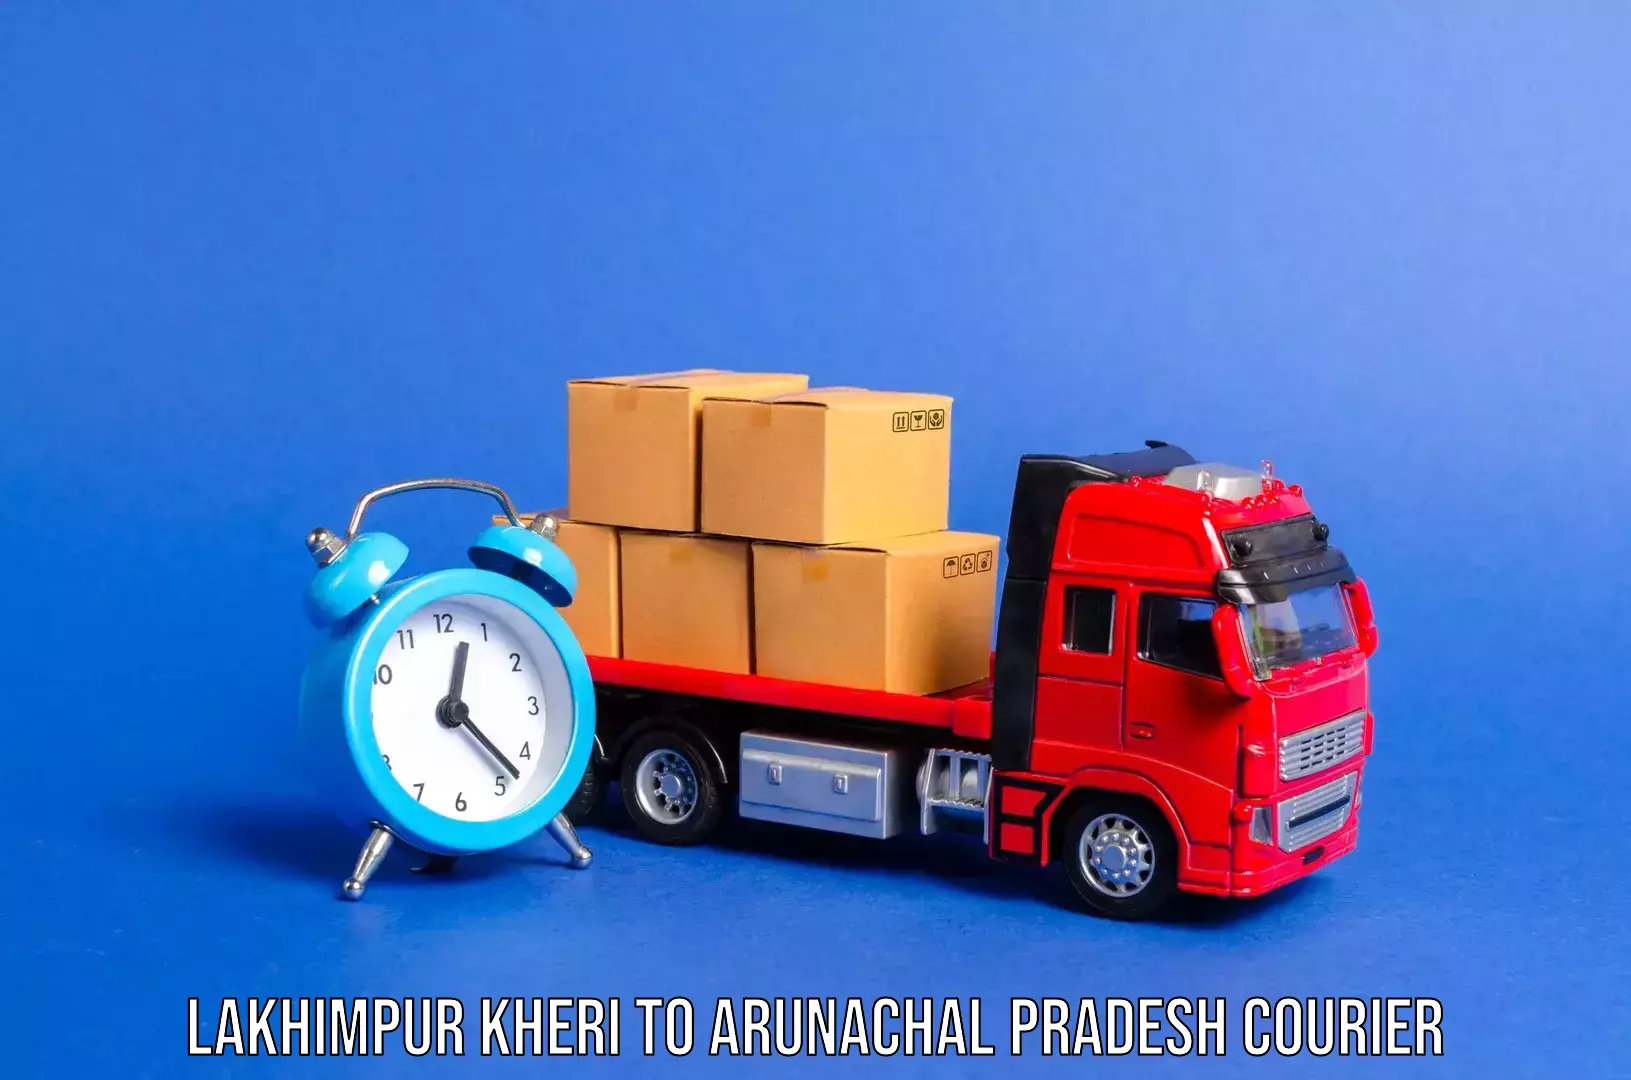 Luggage transport consultancy Lakhimpur Kheri to Basar